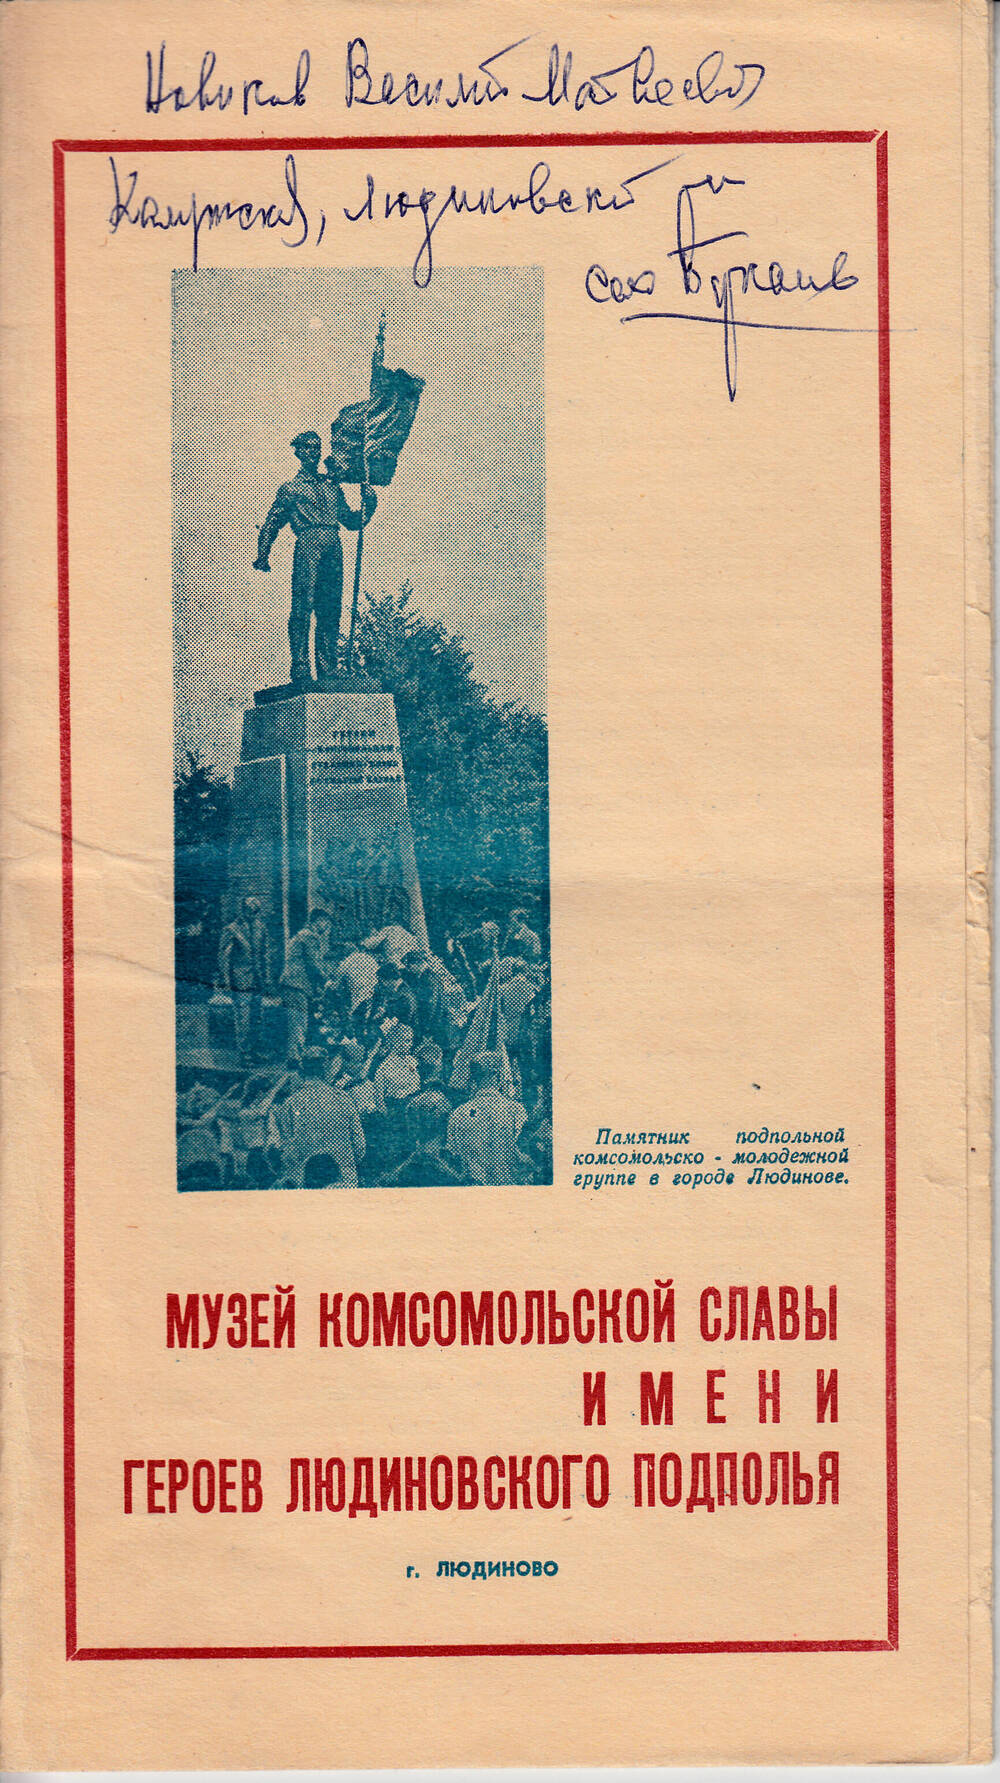 Буклет Музей комсомольской славы имени Героев Людиновского подполья.